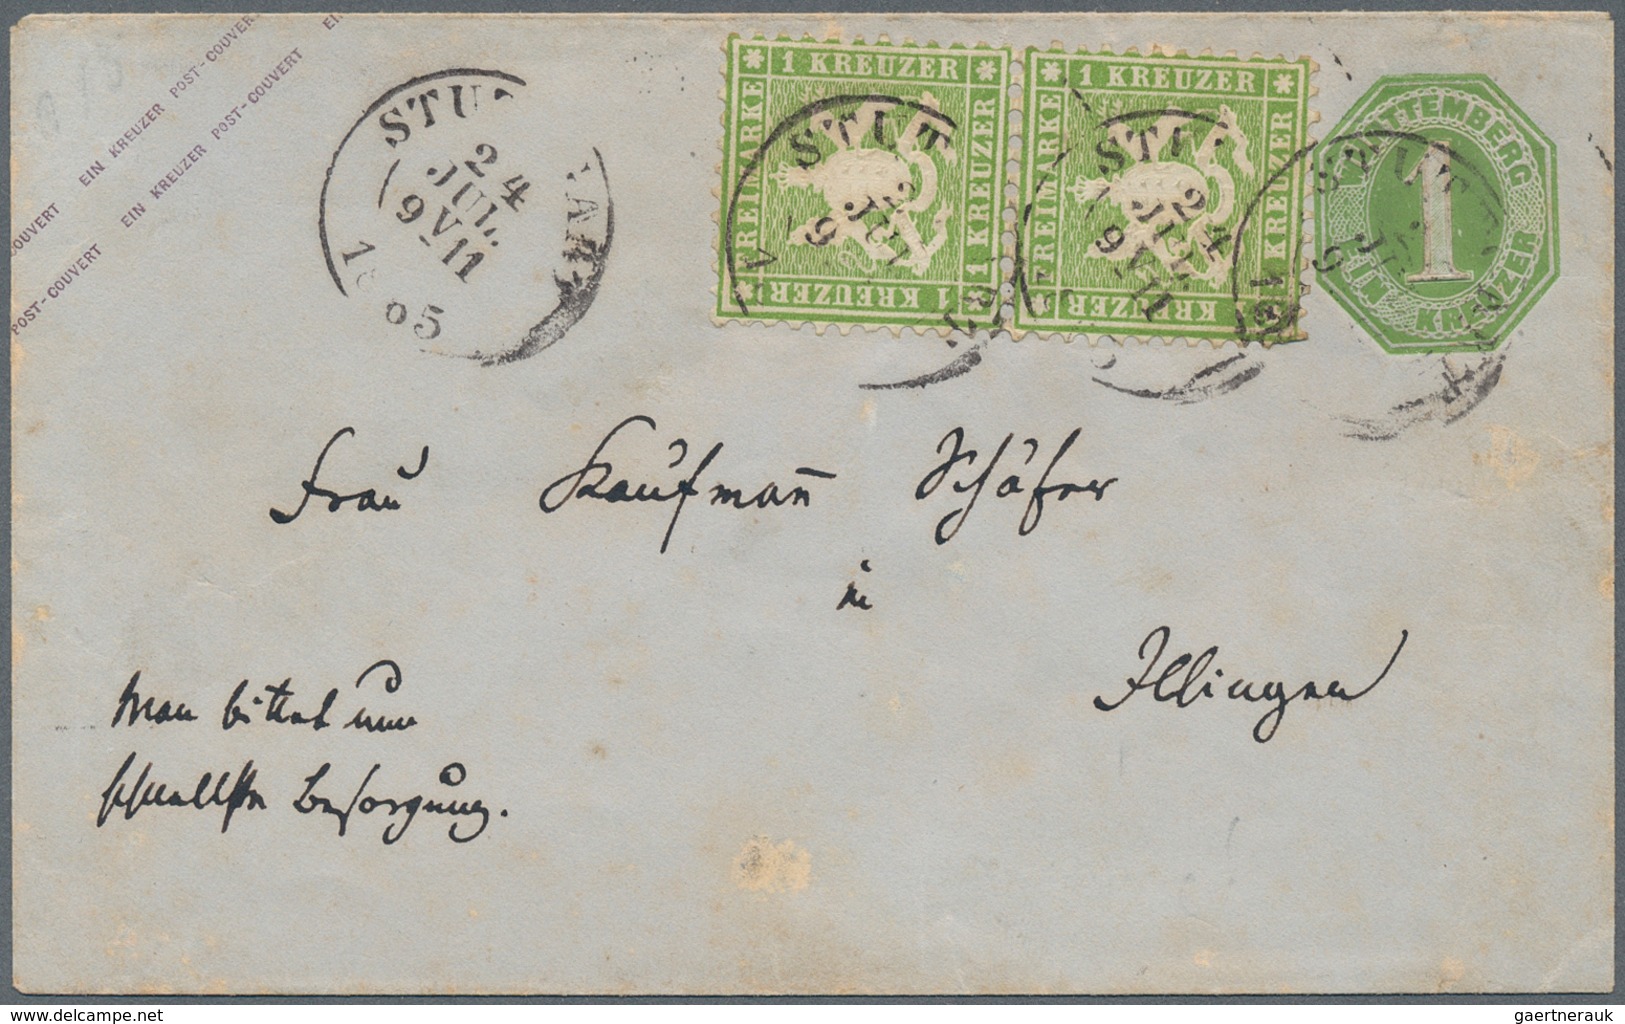 Württemberg - Ganzsachen: 1865/1875, einmalige Zusammenstellung von 4 veschiedenen Ausgaben auf dem